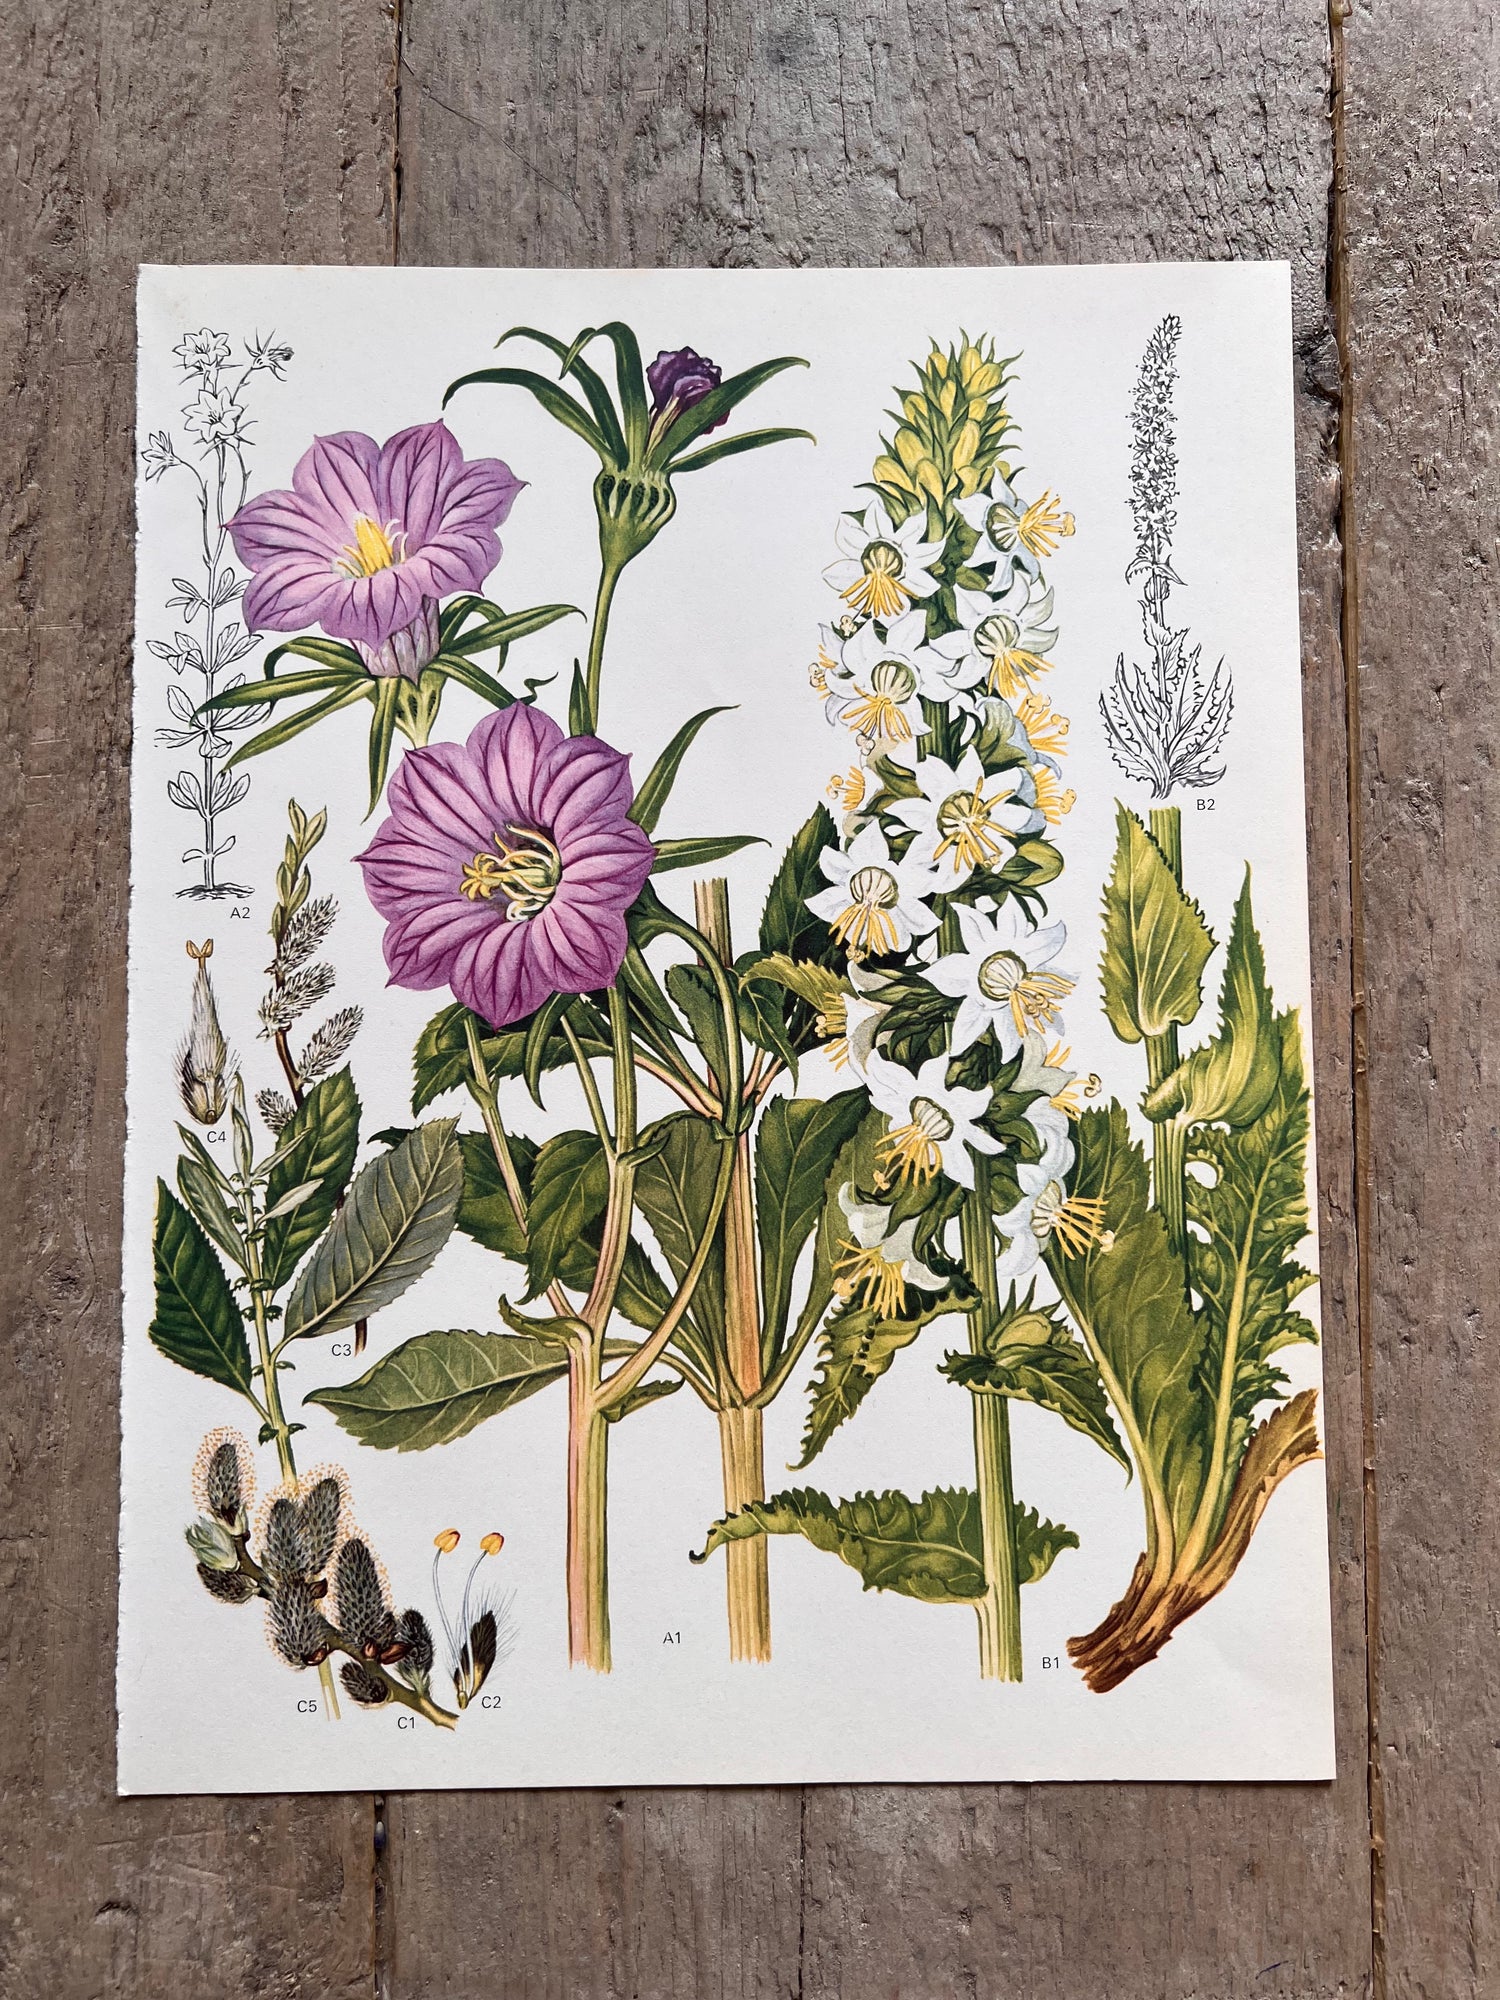 Botanishce illustratie passiebloem jaren 70